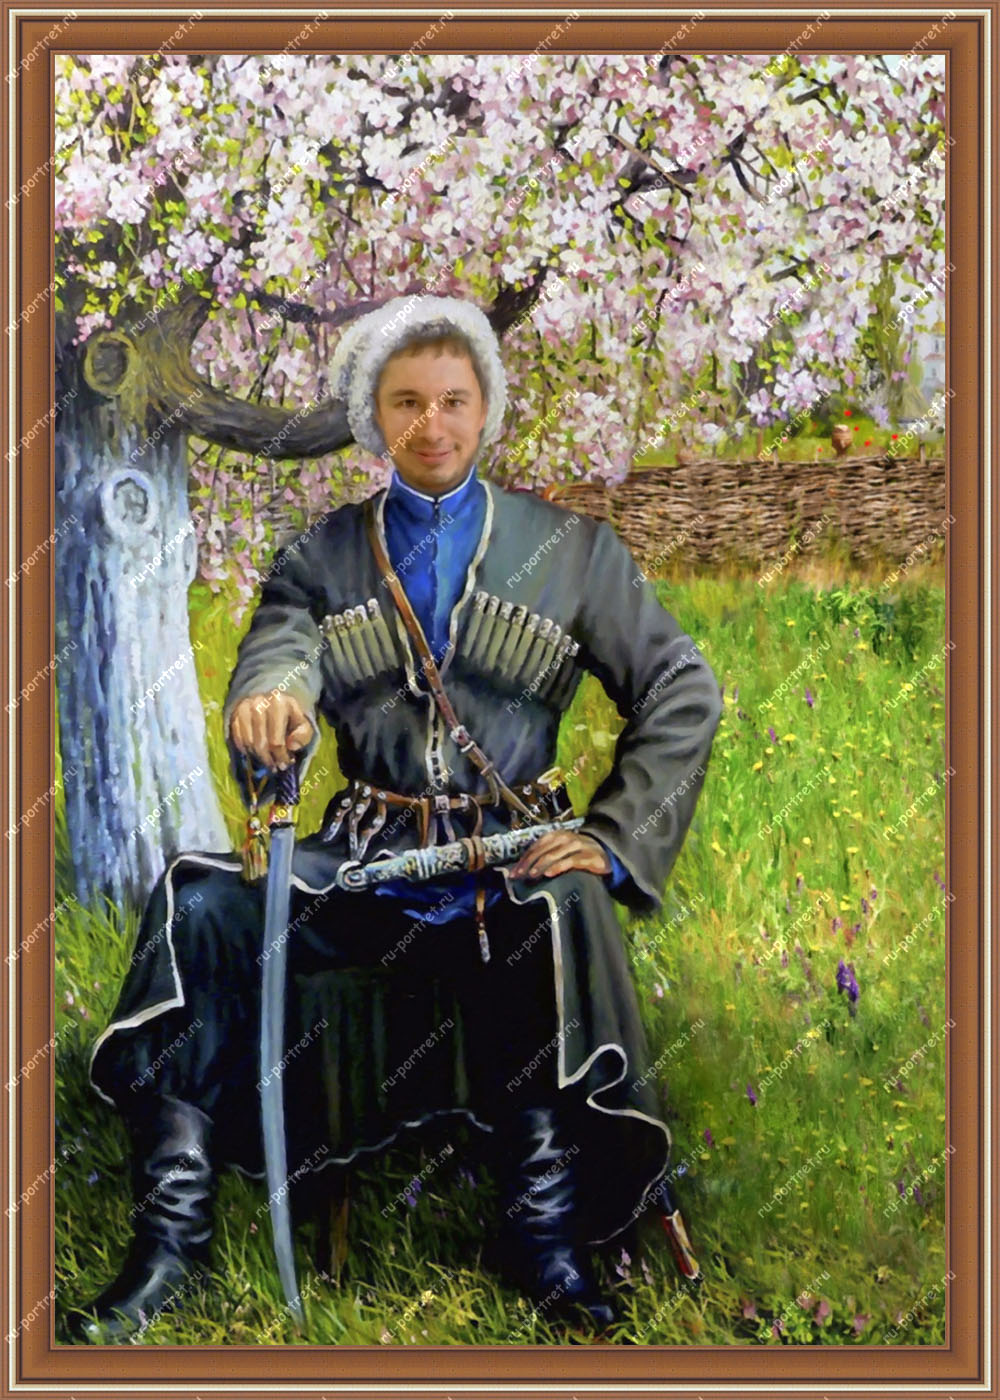 Заказ портрета по фото. Компания Ru-portret.ru Авторская работа. Музейное качество. Звони 89646434155 (WhatsApp & Viber).